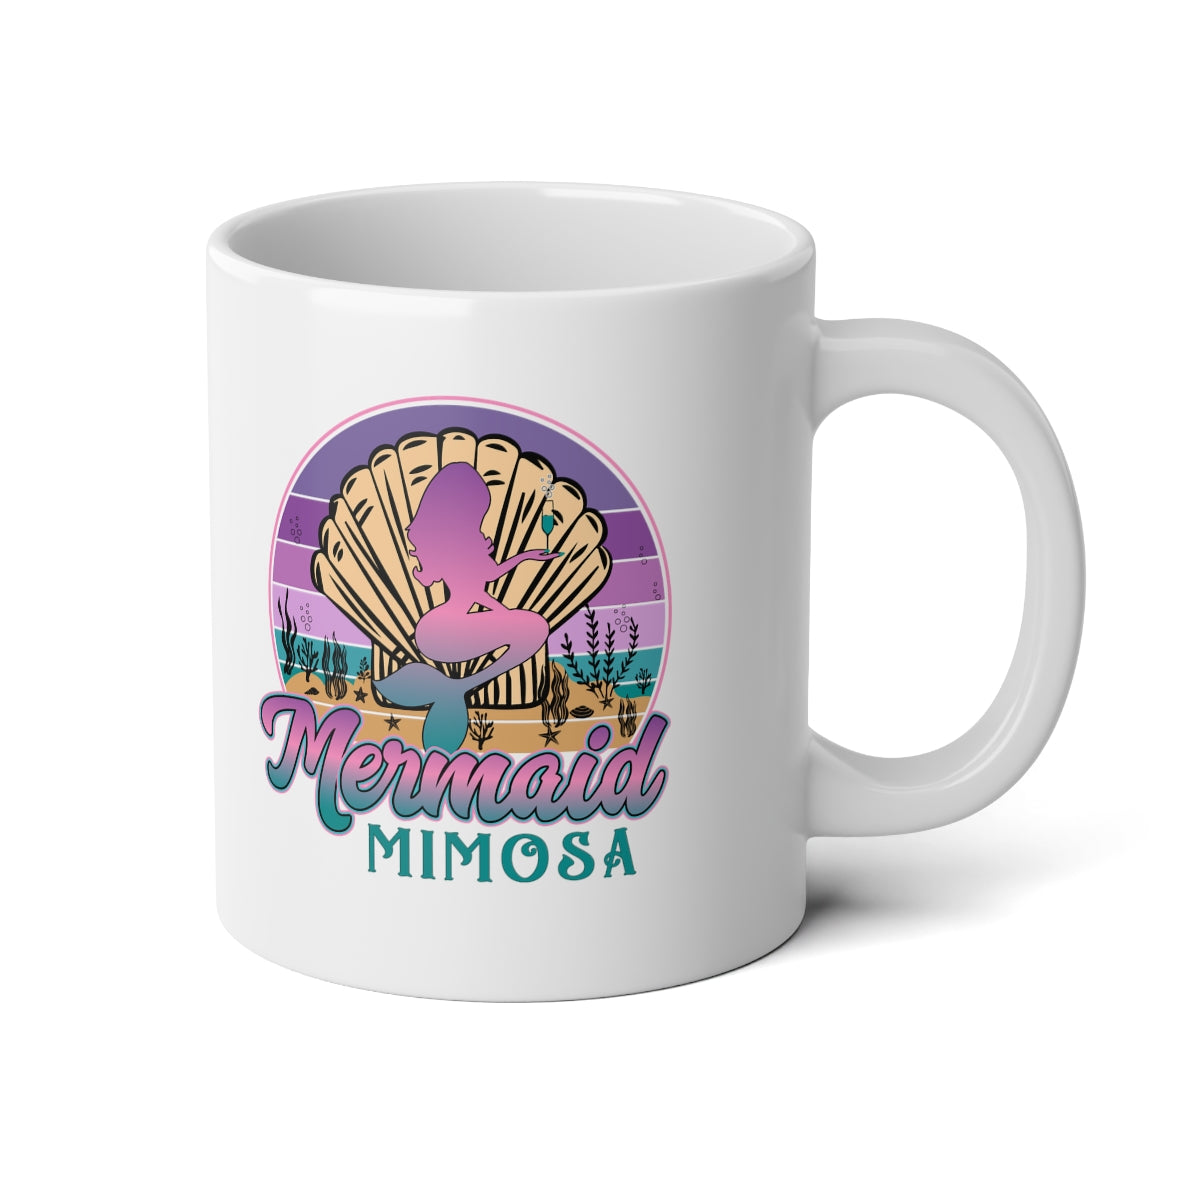 Mermaid Mimosa Jumbo Mug, 20oz